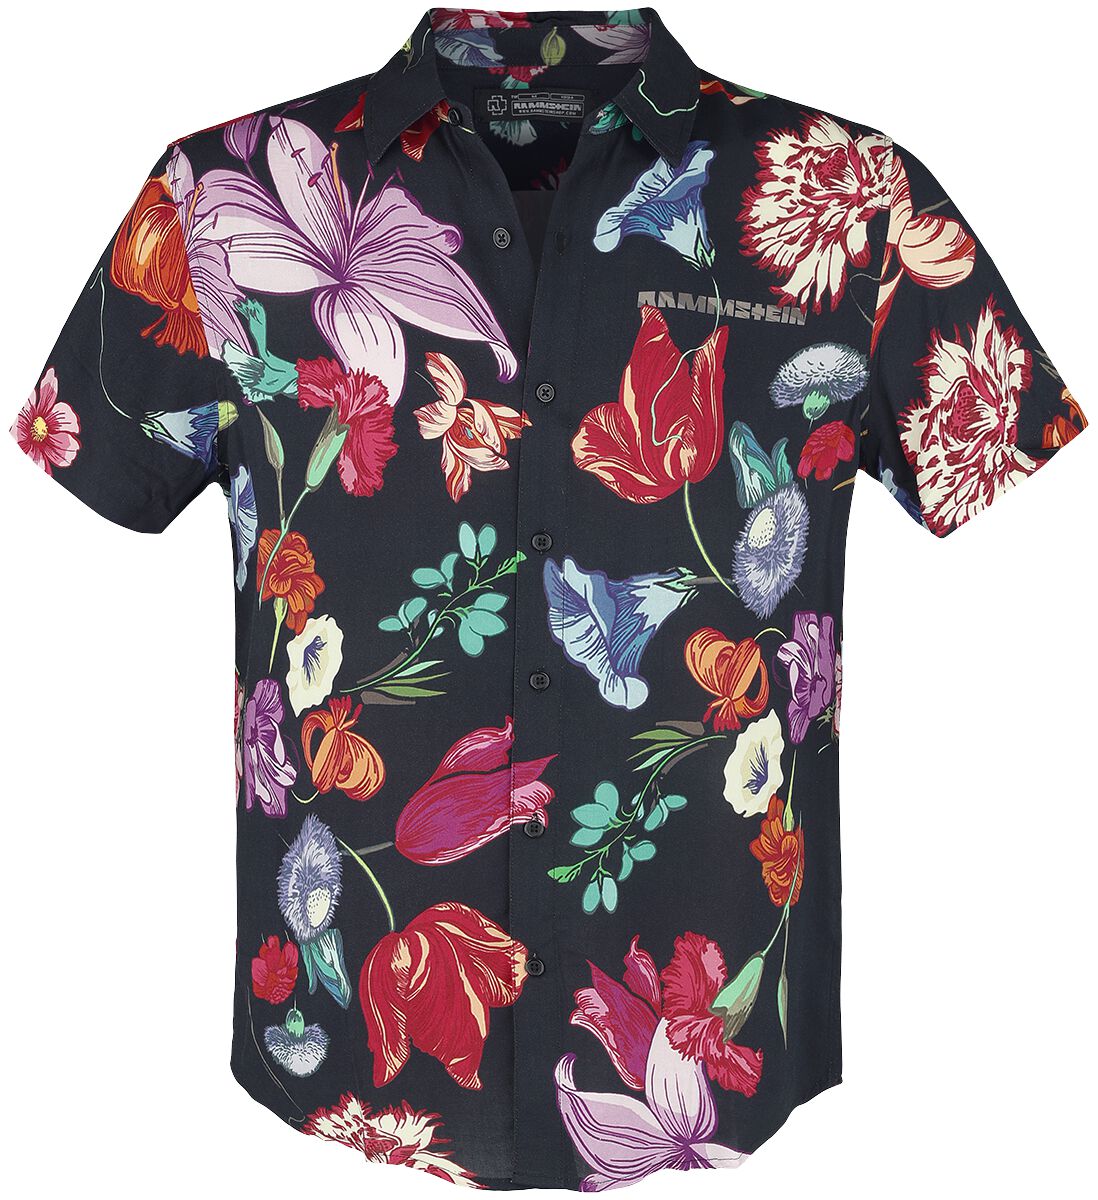 Rammstein Kurzarmhemd - Blumen - S bis 5XL - für Männer - Größe XL - multicolor  - Lizenziertes Merchandise!